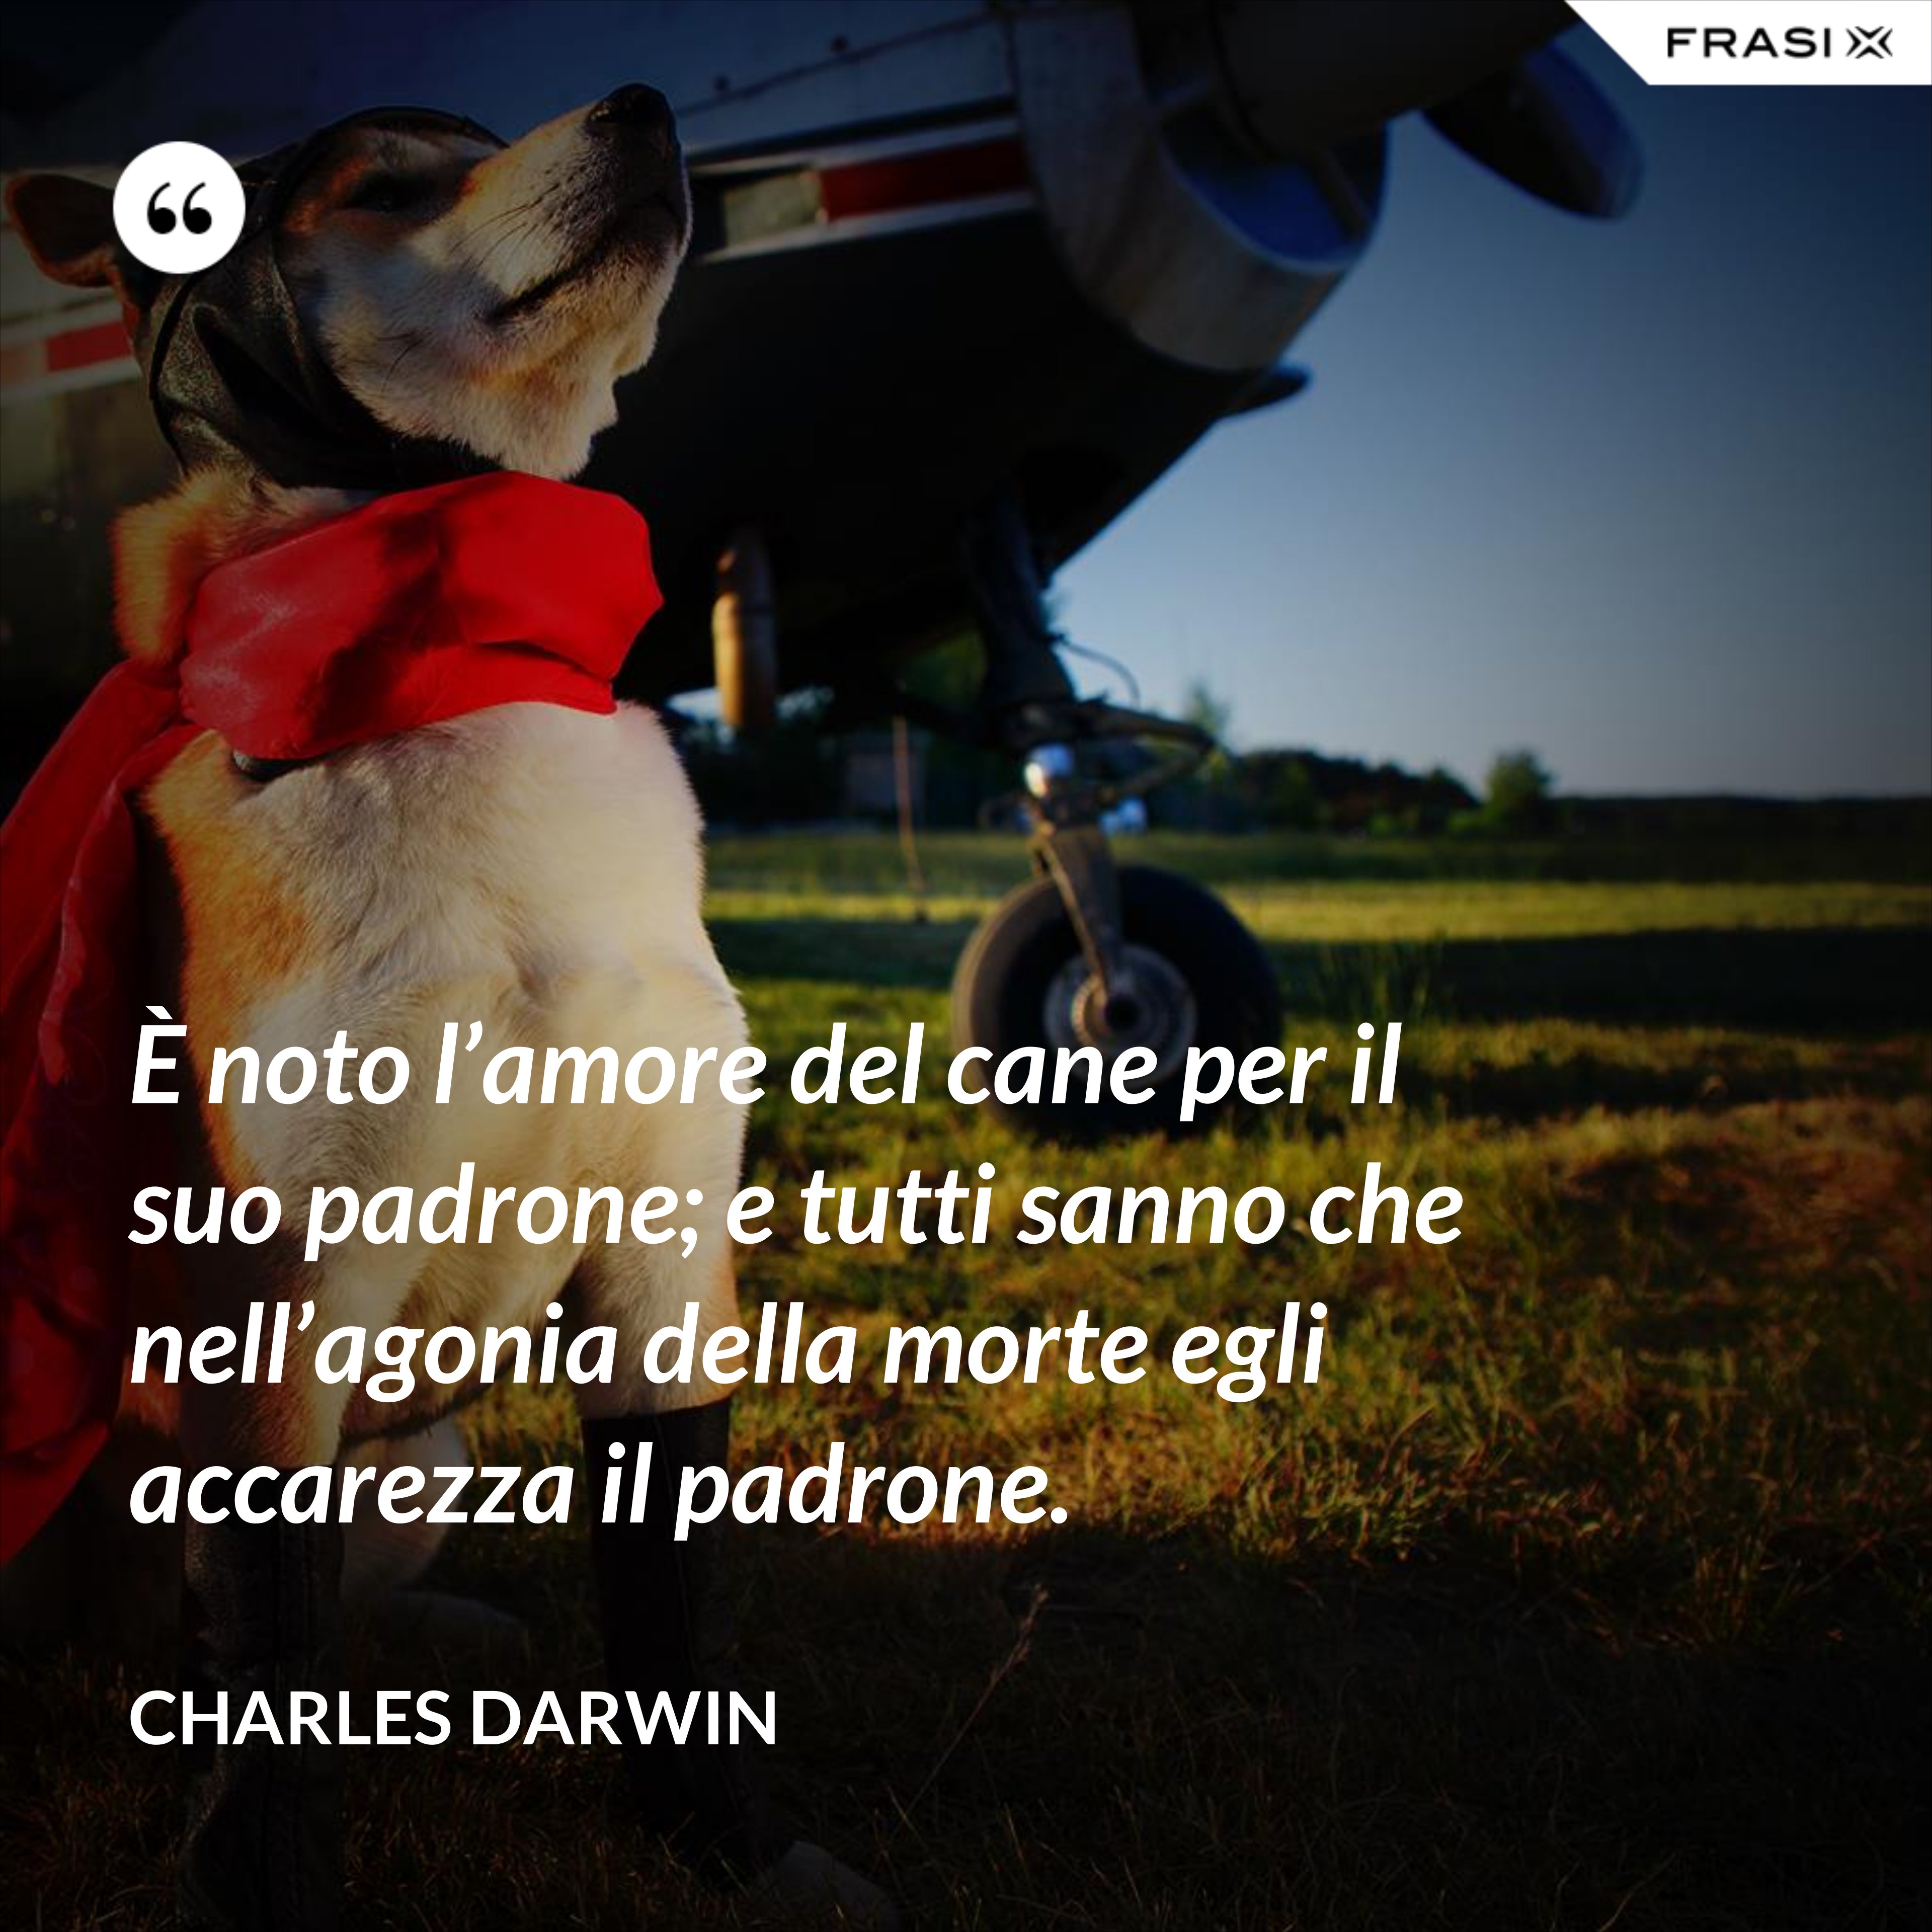 È noto l’amore del cane per il suo padrone; e tutti sanno che nell’agonia della morte egli accarezza il padrone. - Charles Darwin